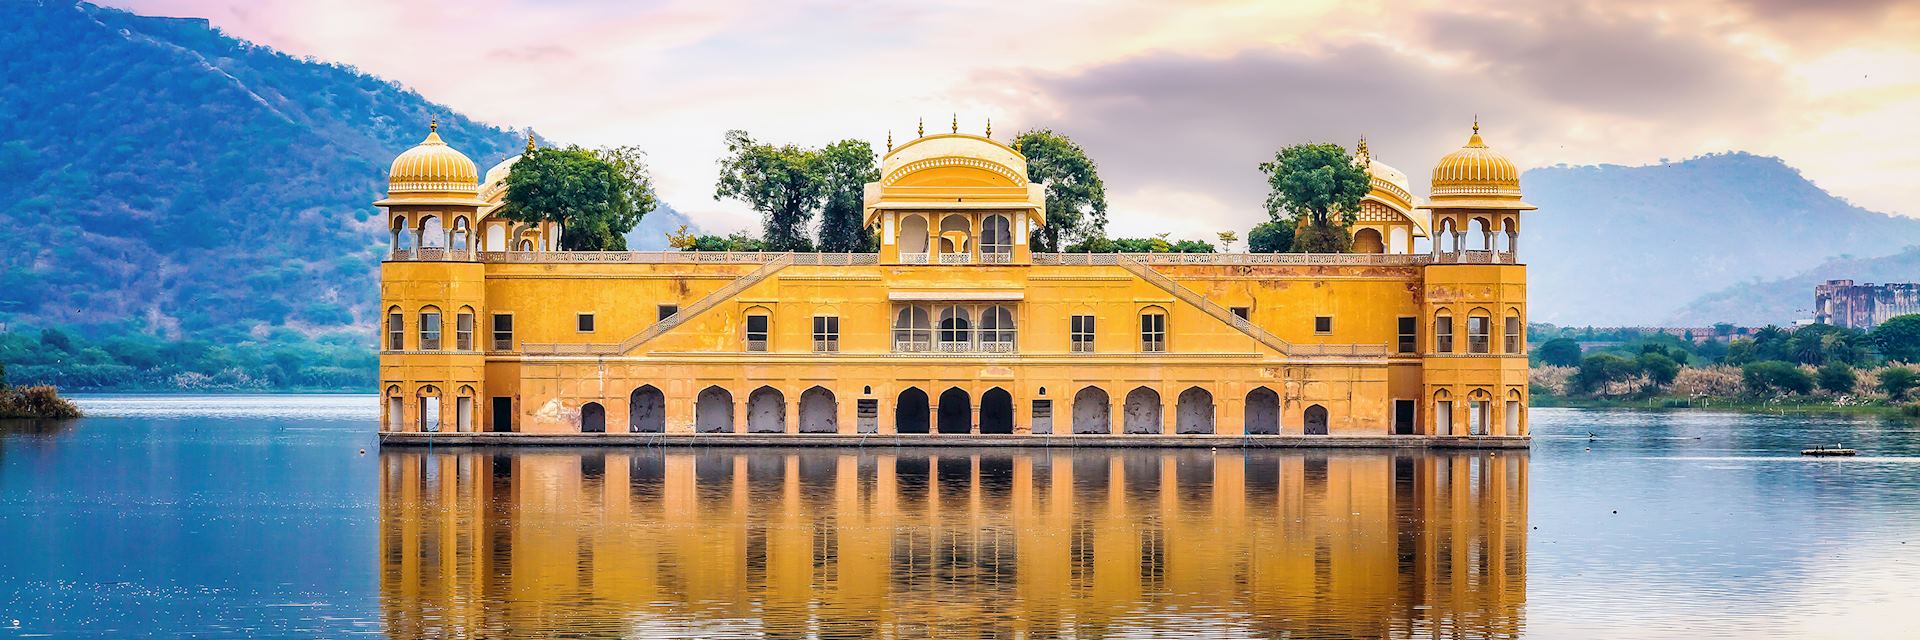 Jal Mahal, Rajasthan